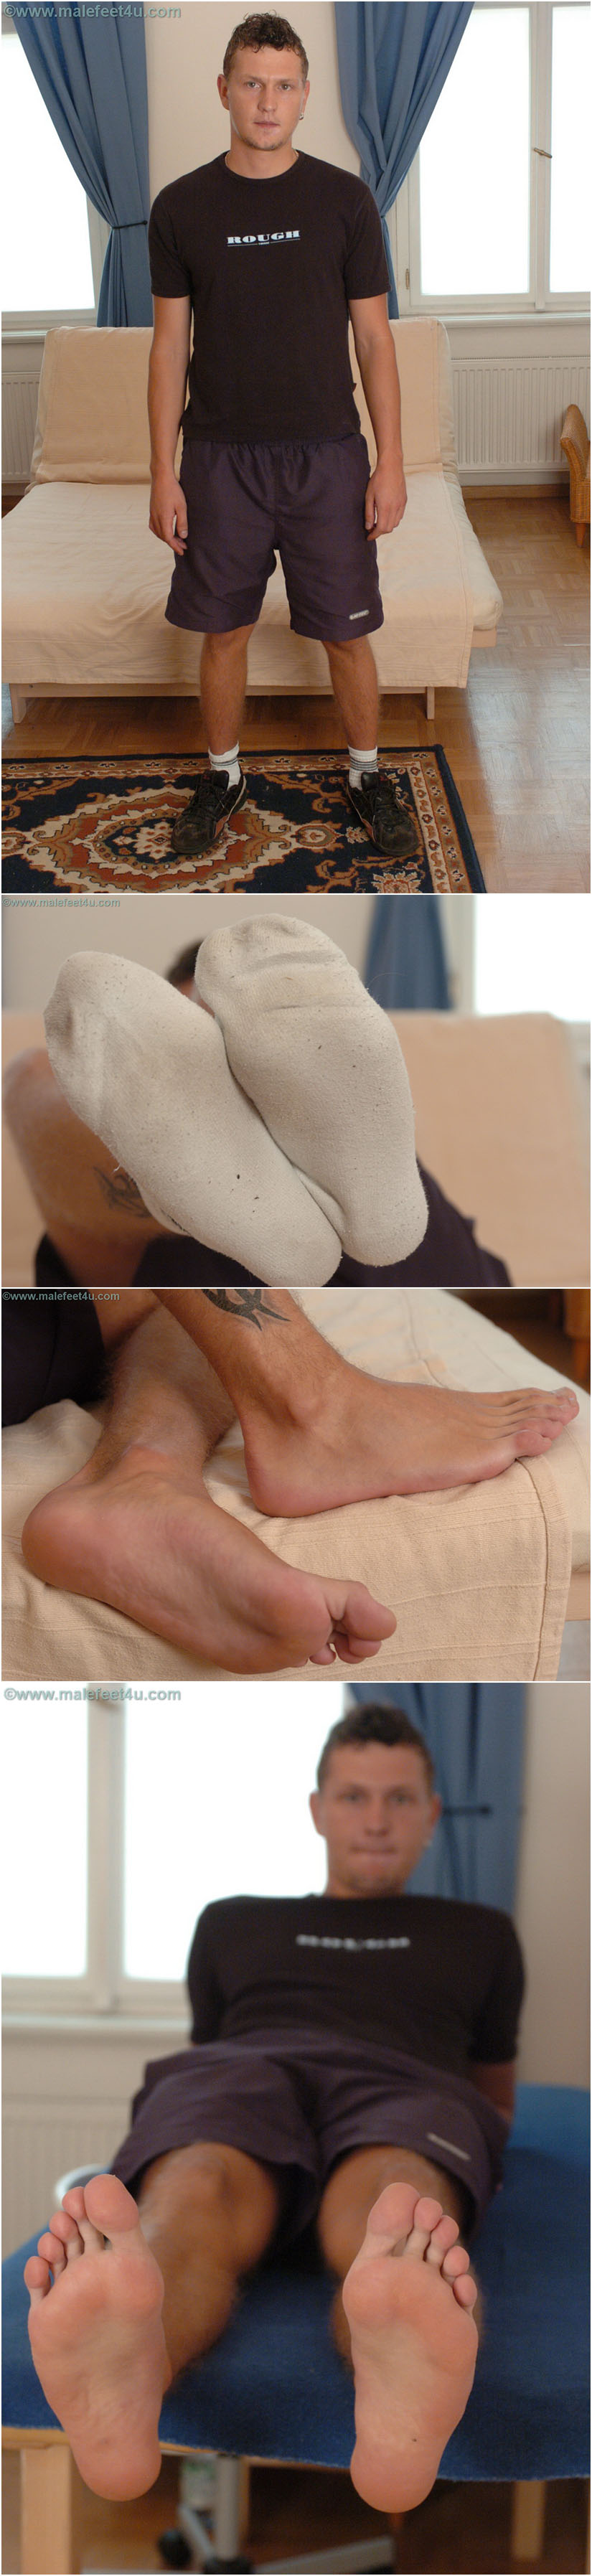 Euro male feet in dirty socks, then barefoot